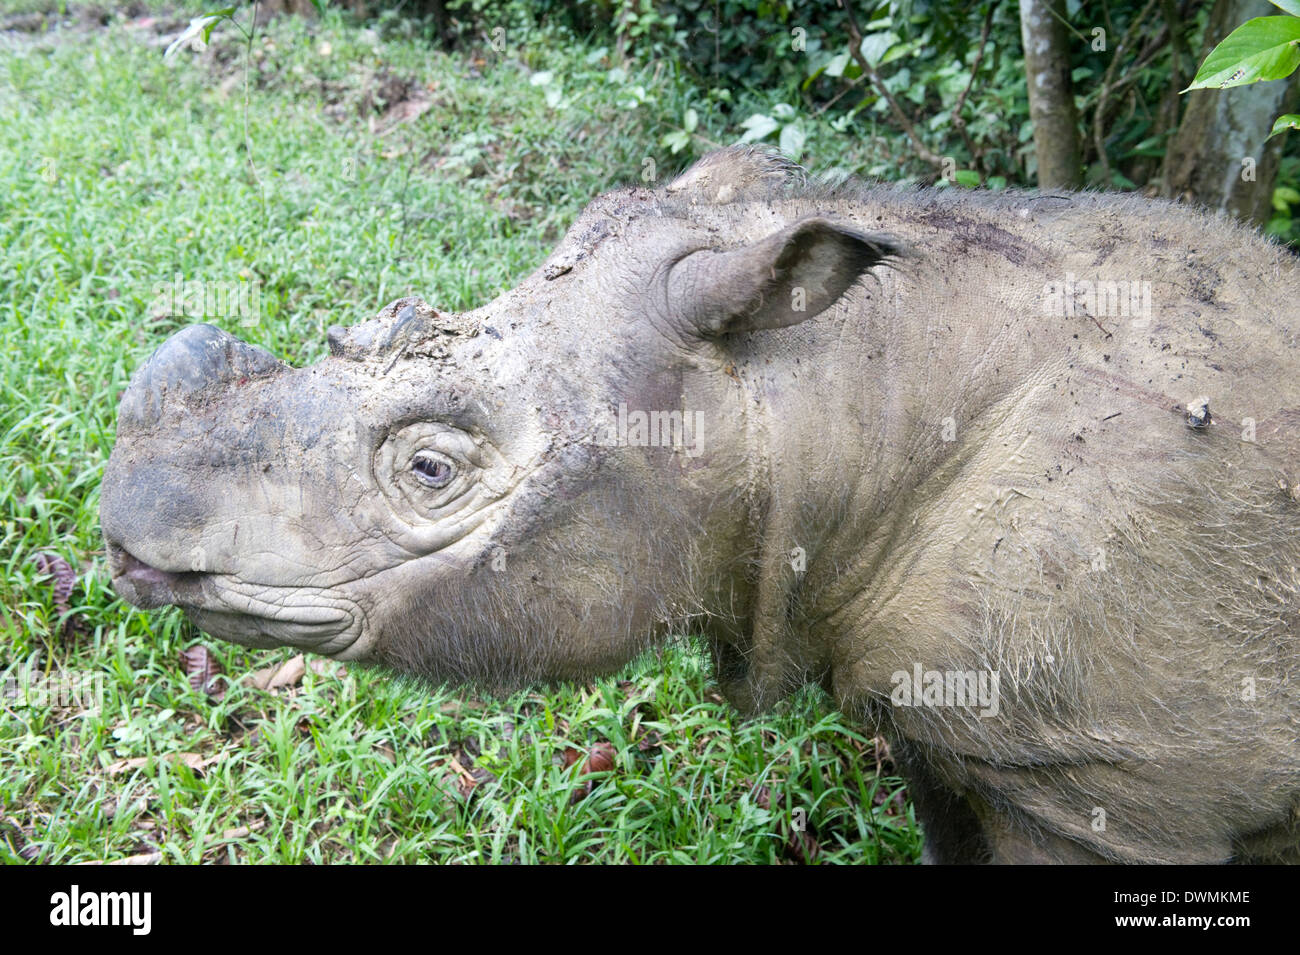 Male Sumatran rhino (Borneo rhino) (Dicerorhinus sumatrensis) in wallow, Tabin Reserve, Sabah, Borneo, Malaysia, Southeast Asia Stock Photo